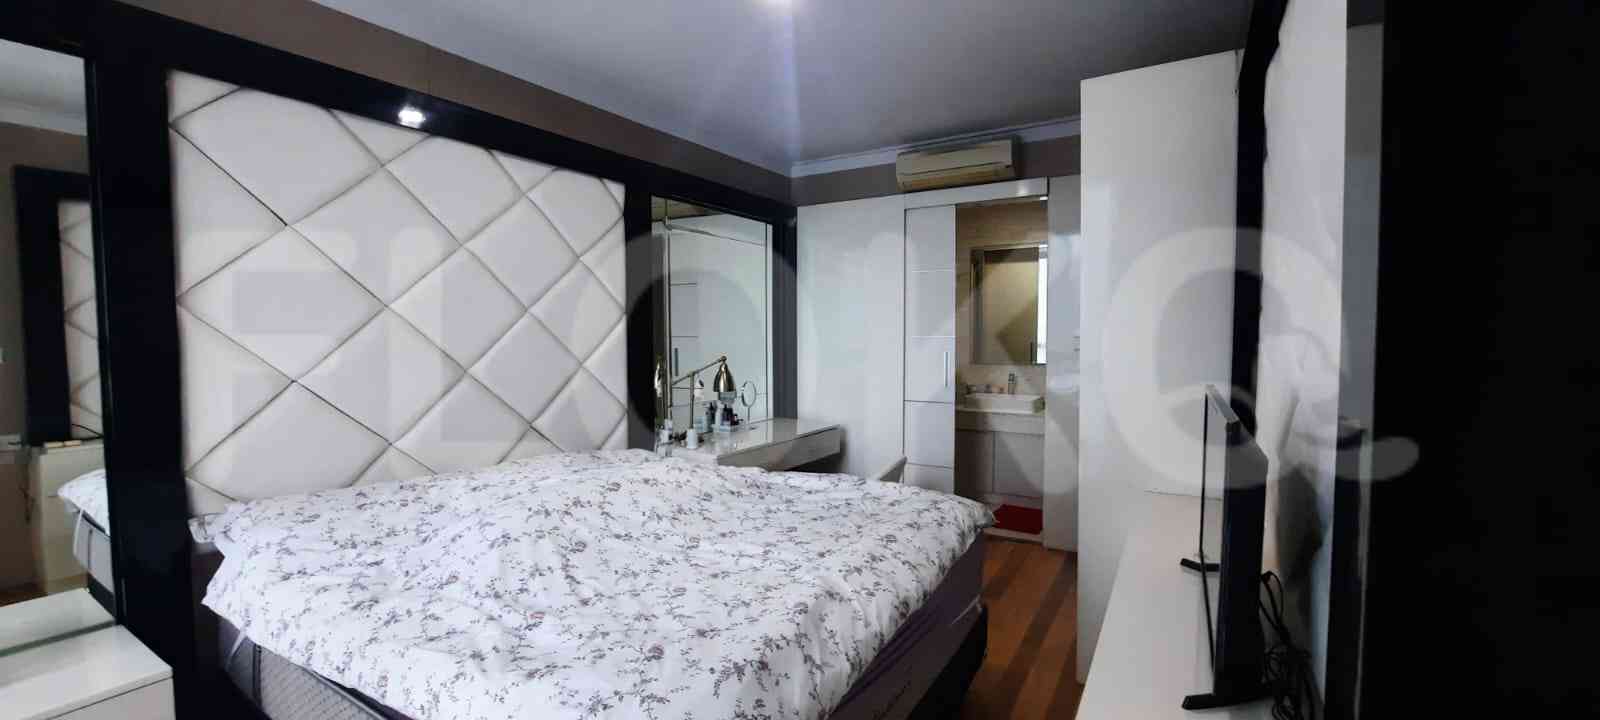 1 Bedroom on 15th Floor for Rent in Residence 8 Senopati - fseadd 1